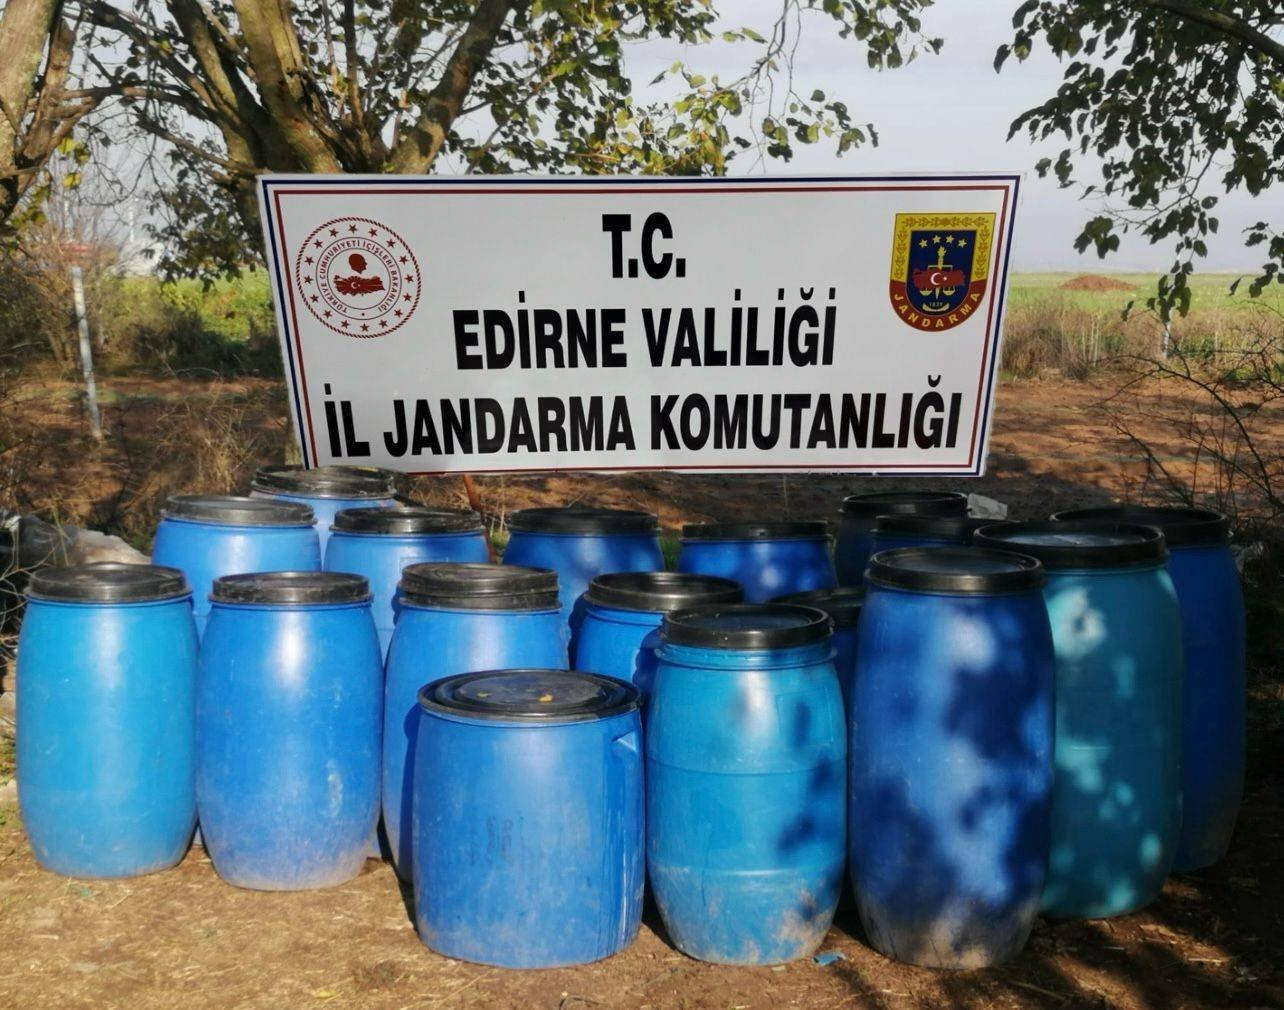 Edirne'de 2 ton kaçak içki ele geçirildi